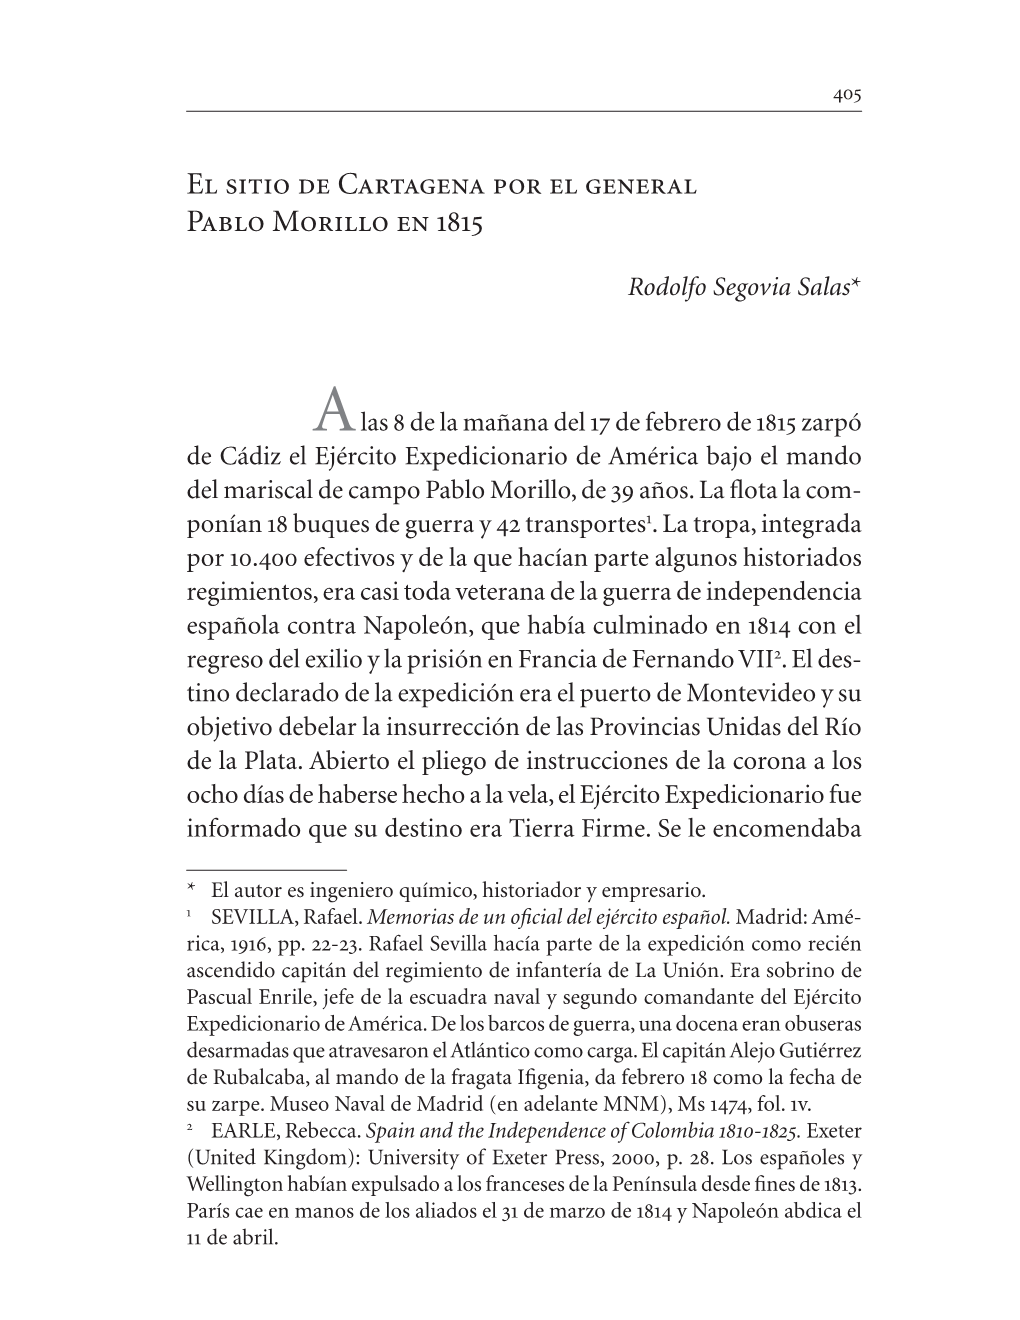 El Sitio De Cartagena Por El General Pablo Morillo En 1815